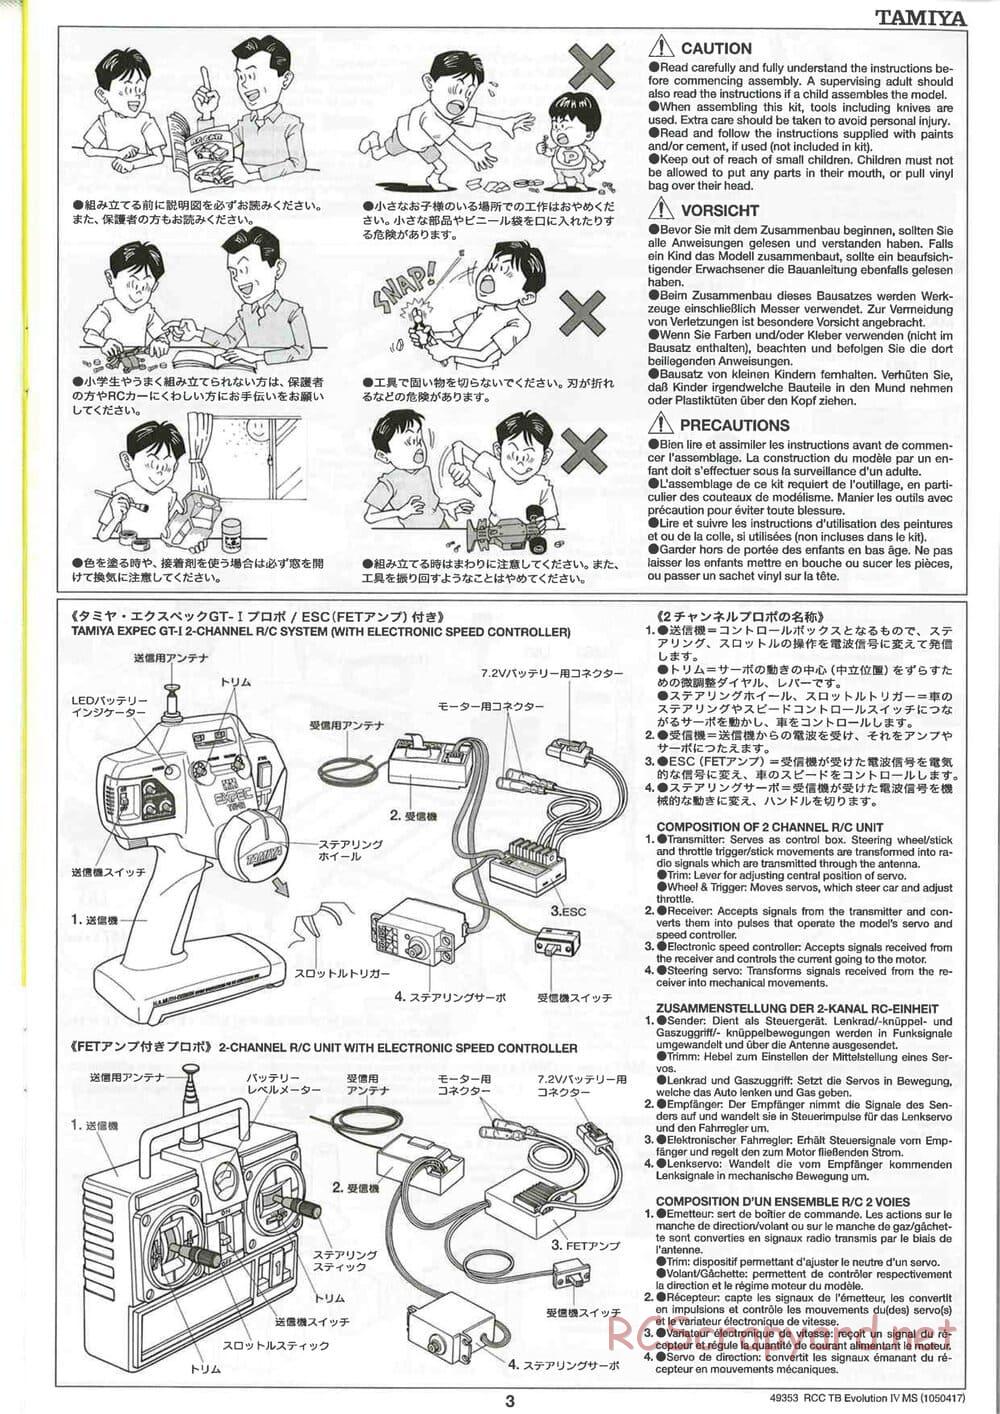 Tamiya - TB Evolution IV MS Chassis - Manual - Page 3